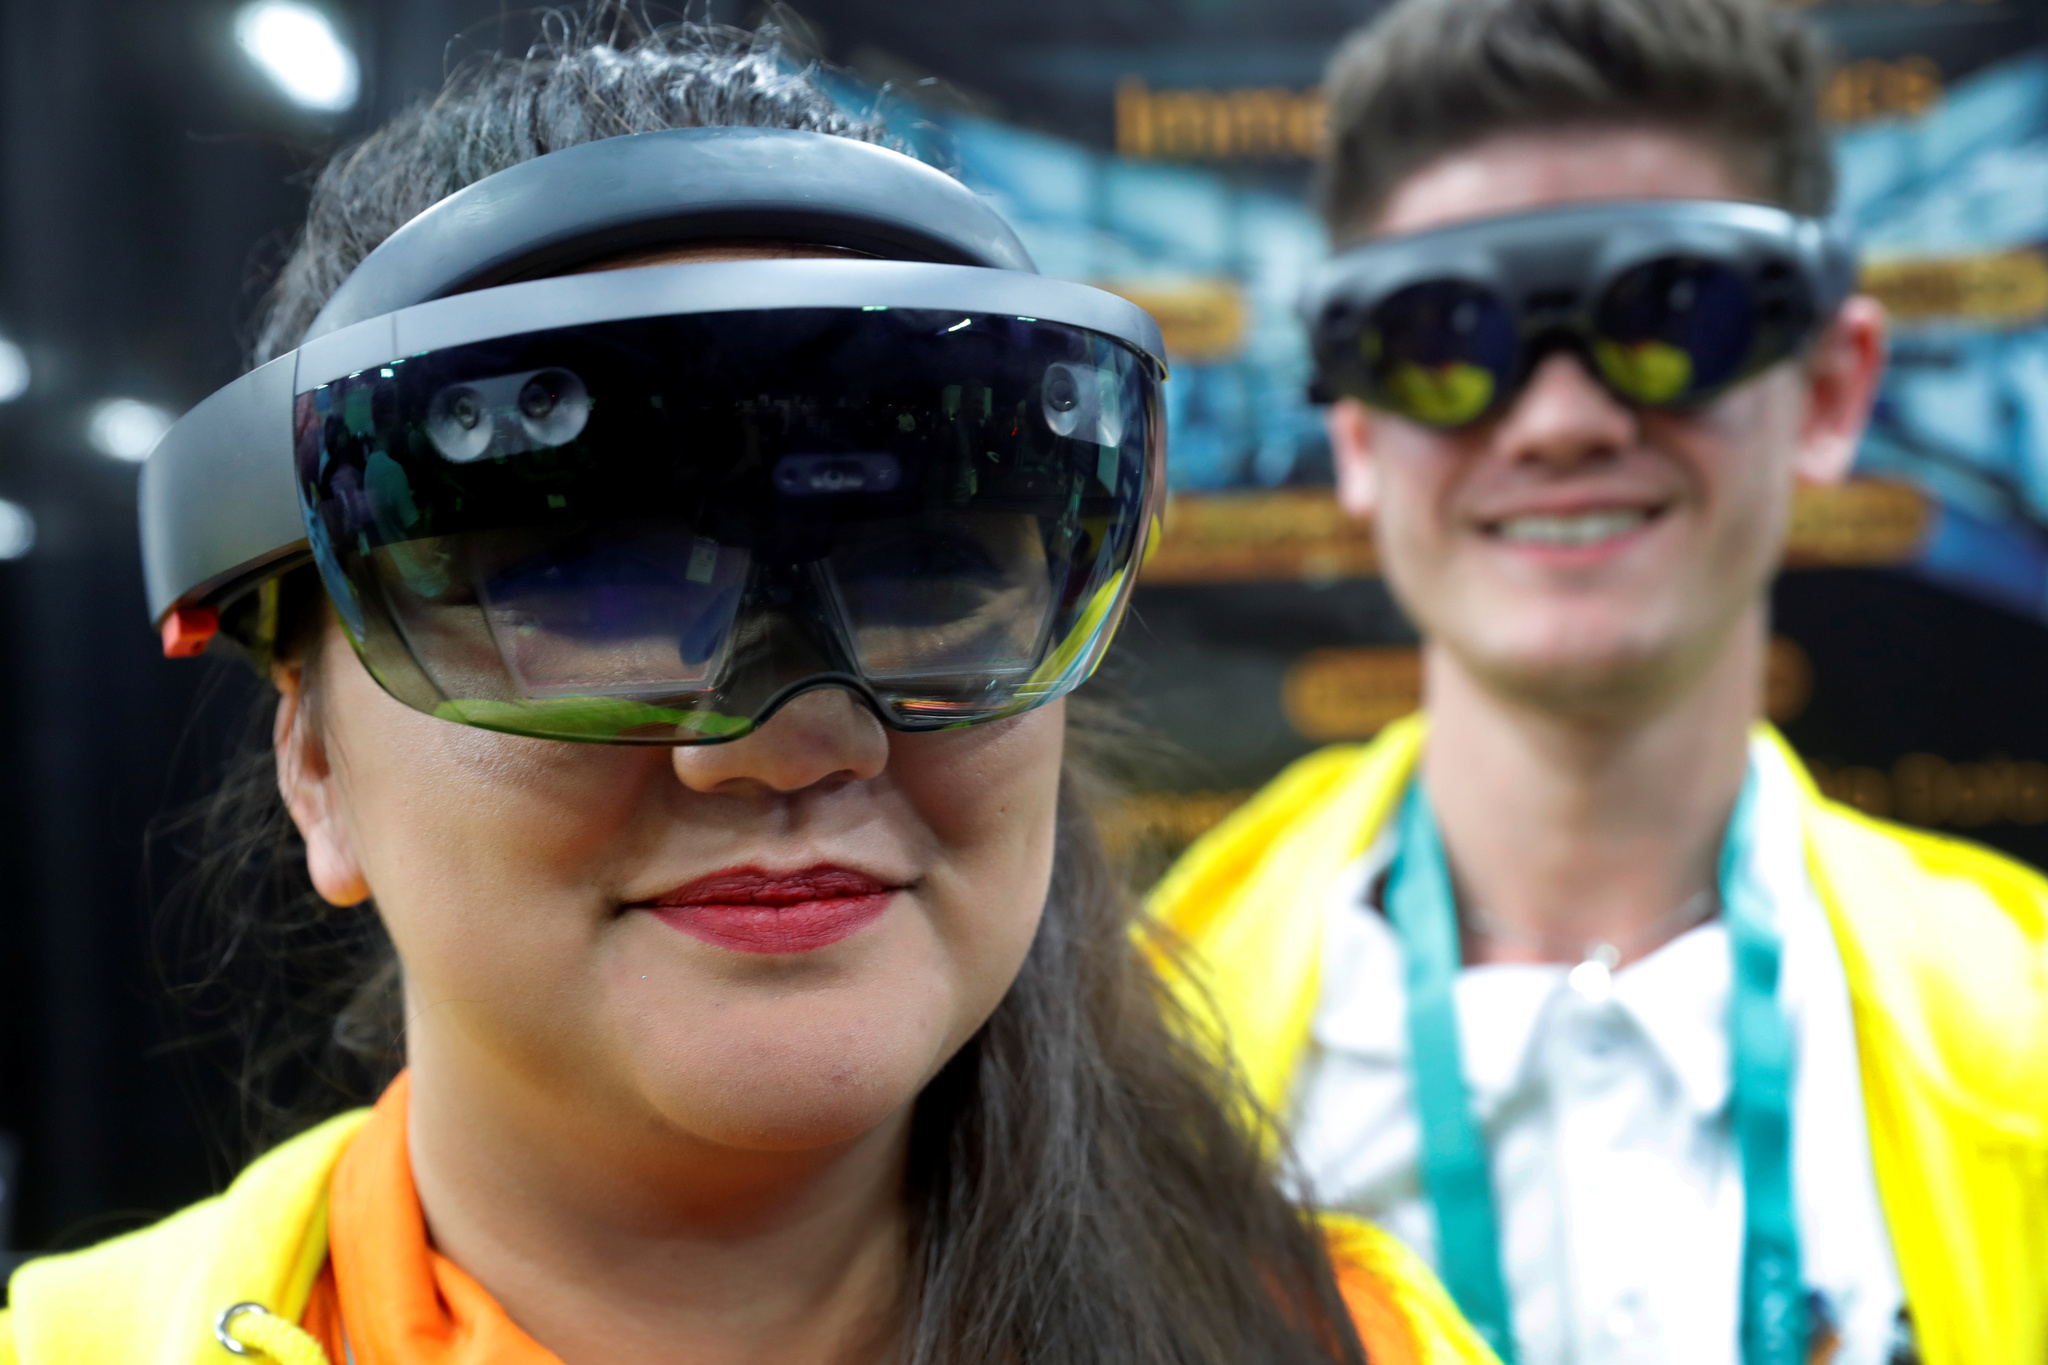 Gafas de realidad aumentada en el CES de Las Vegas.